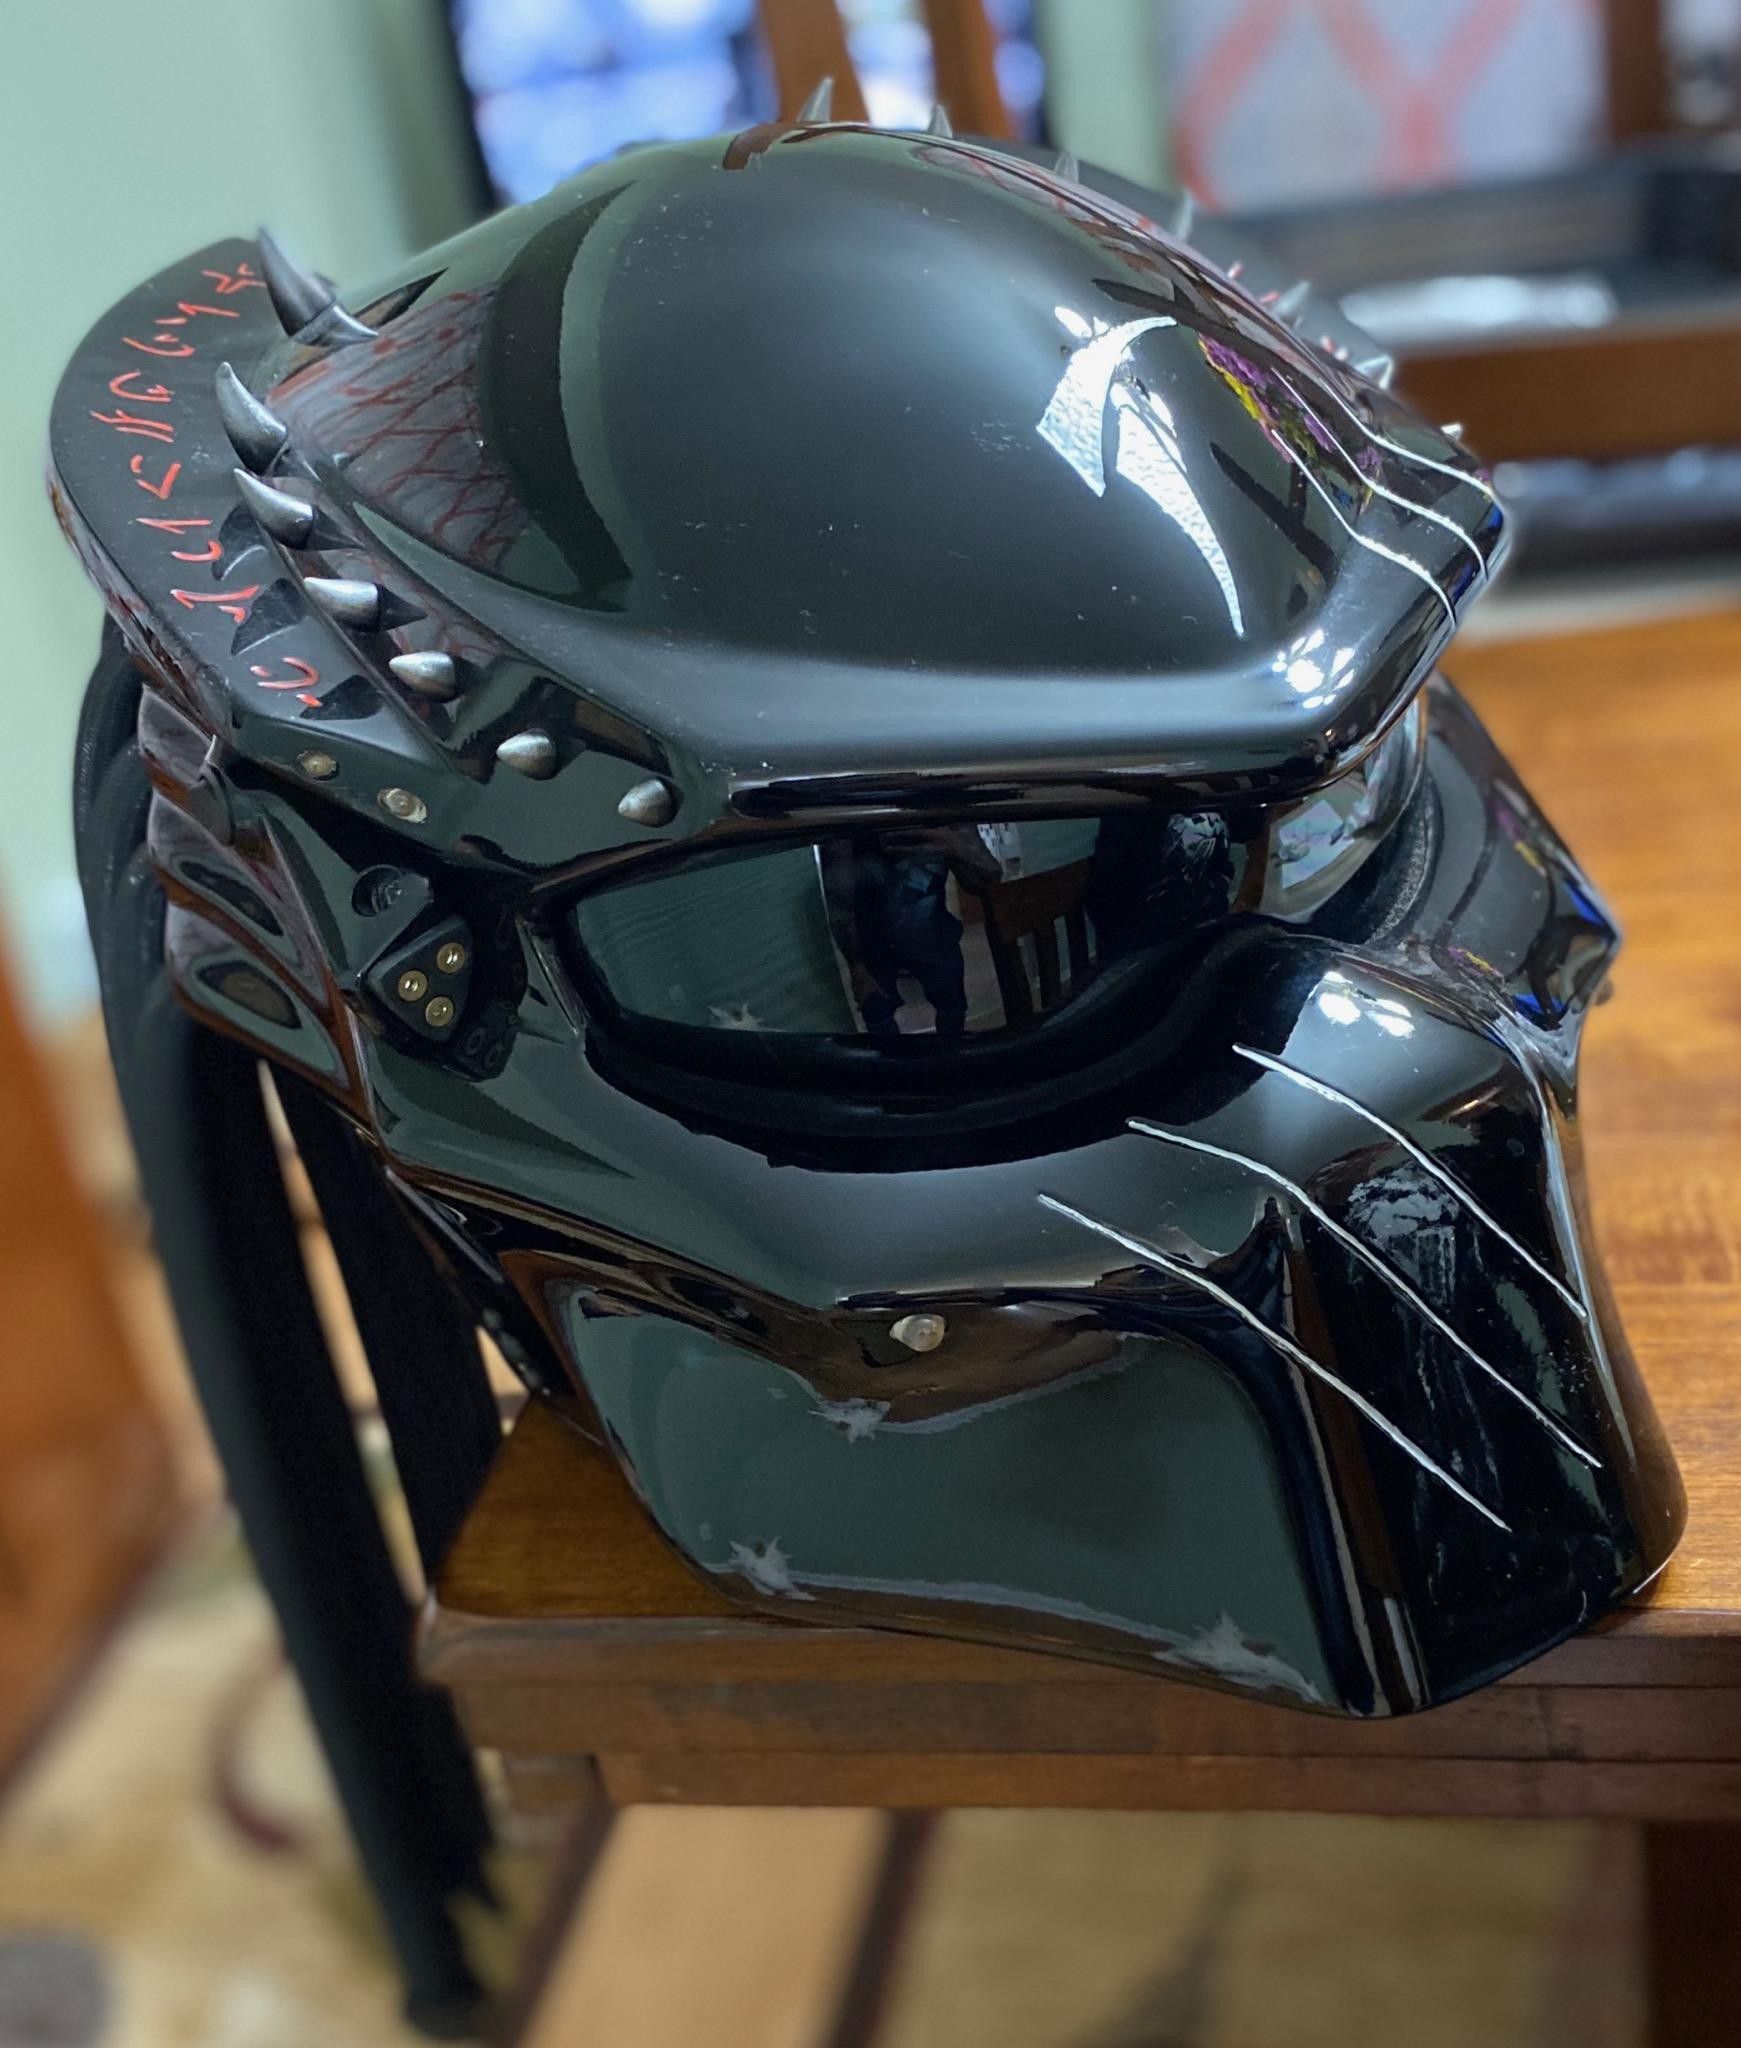 Selling my black predator motorcycle helmet